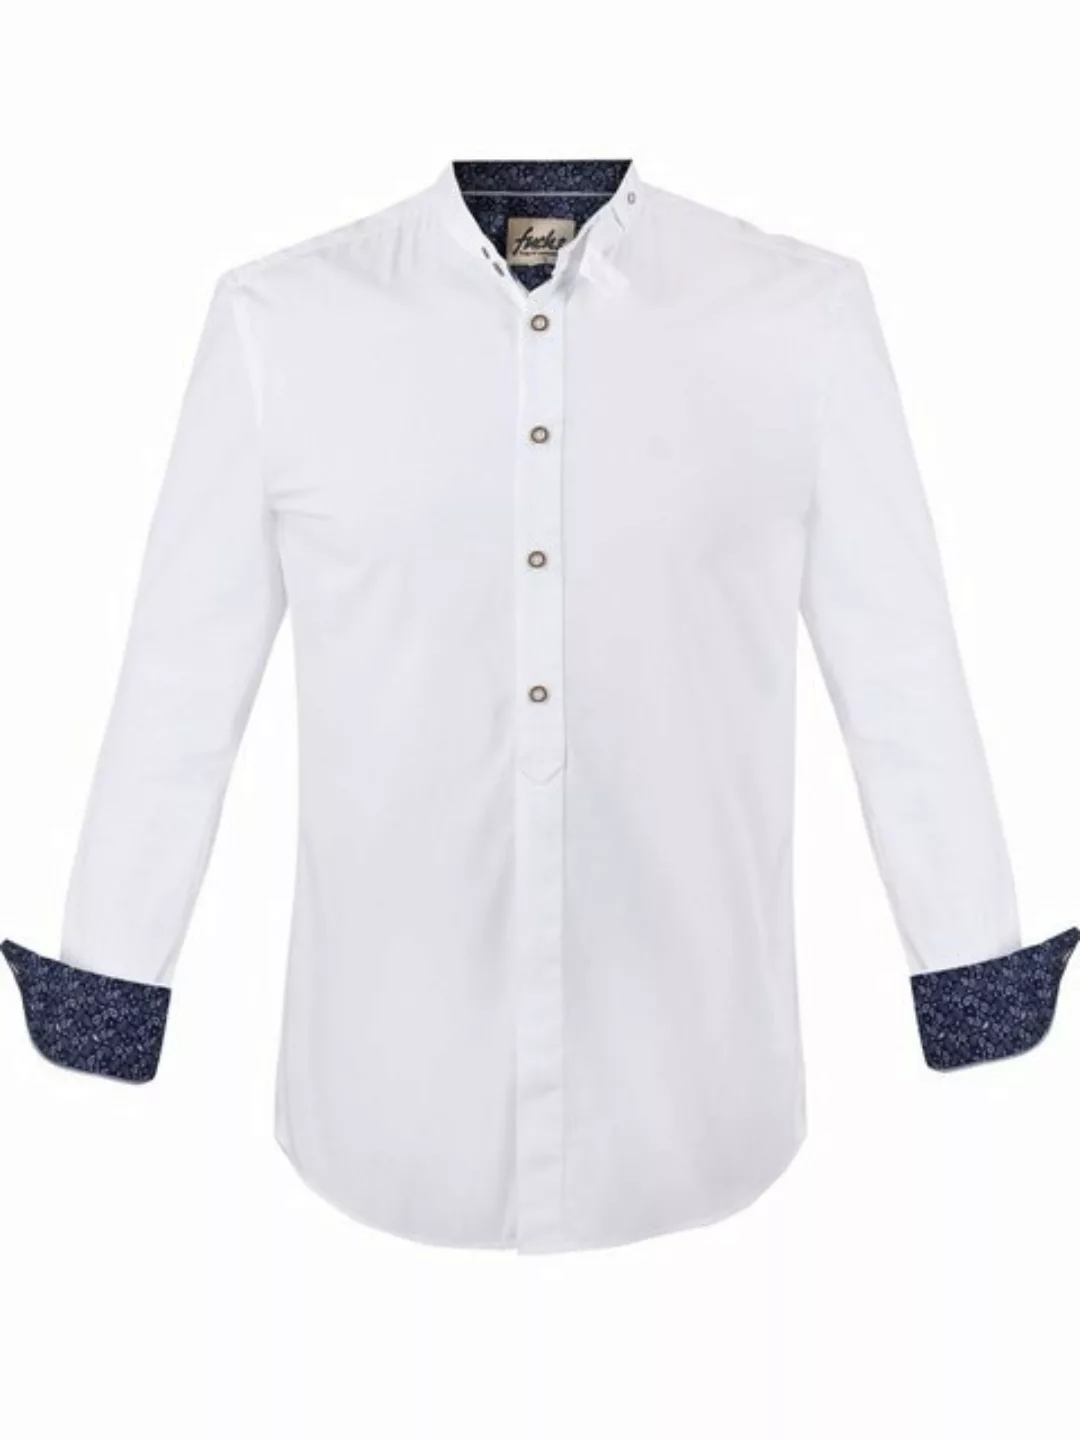 FUCHS Trachtenhemd Hemd Albert weiß-marine mit Stehkragen günstig online kaufen